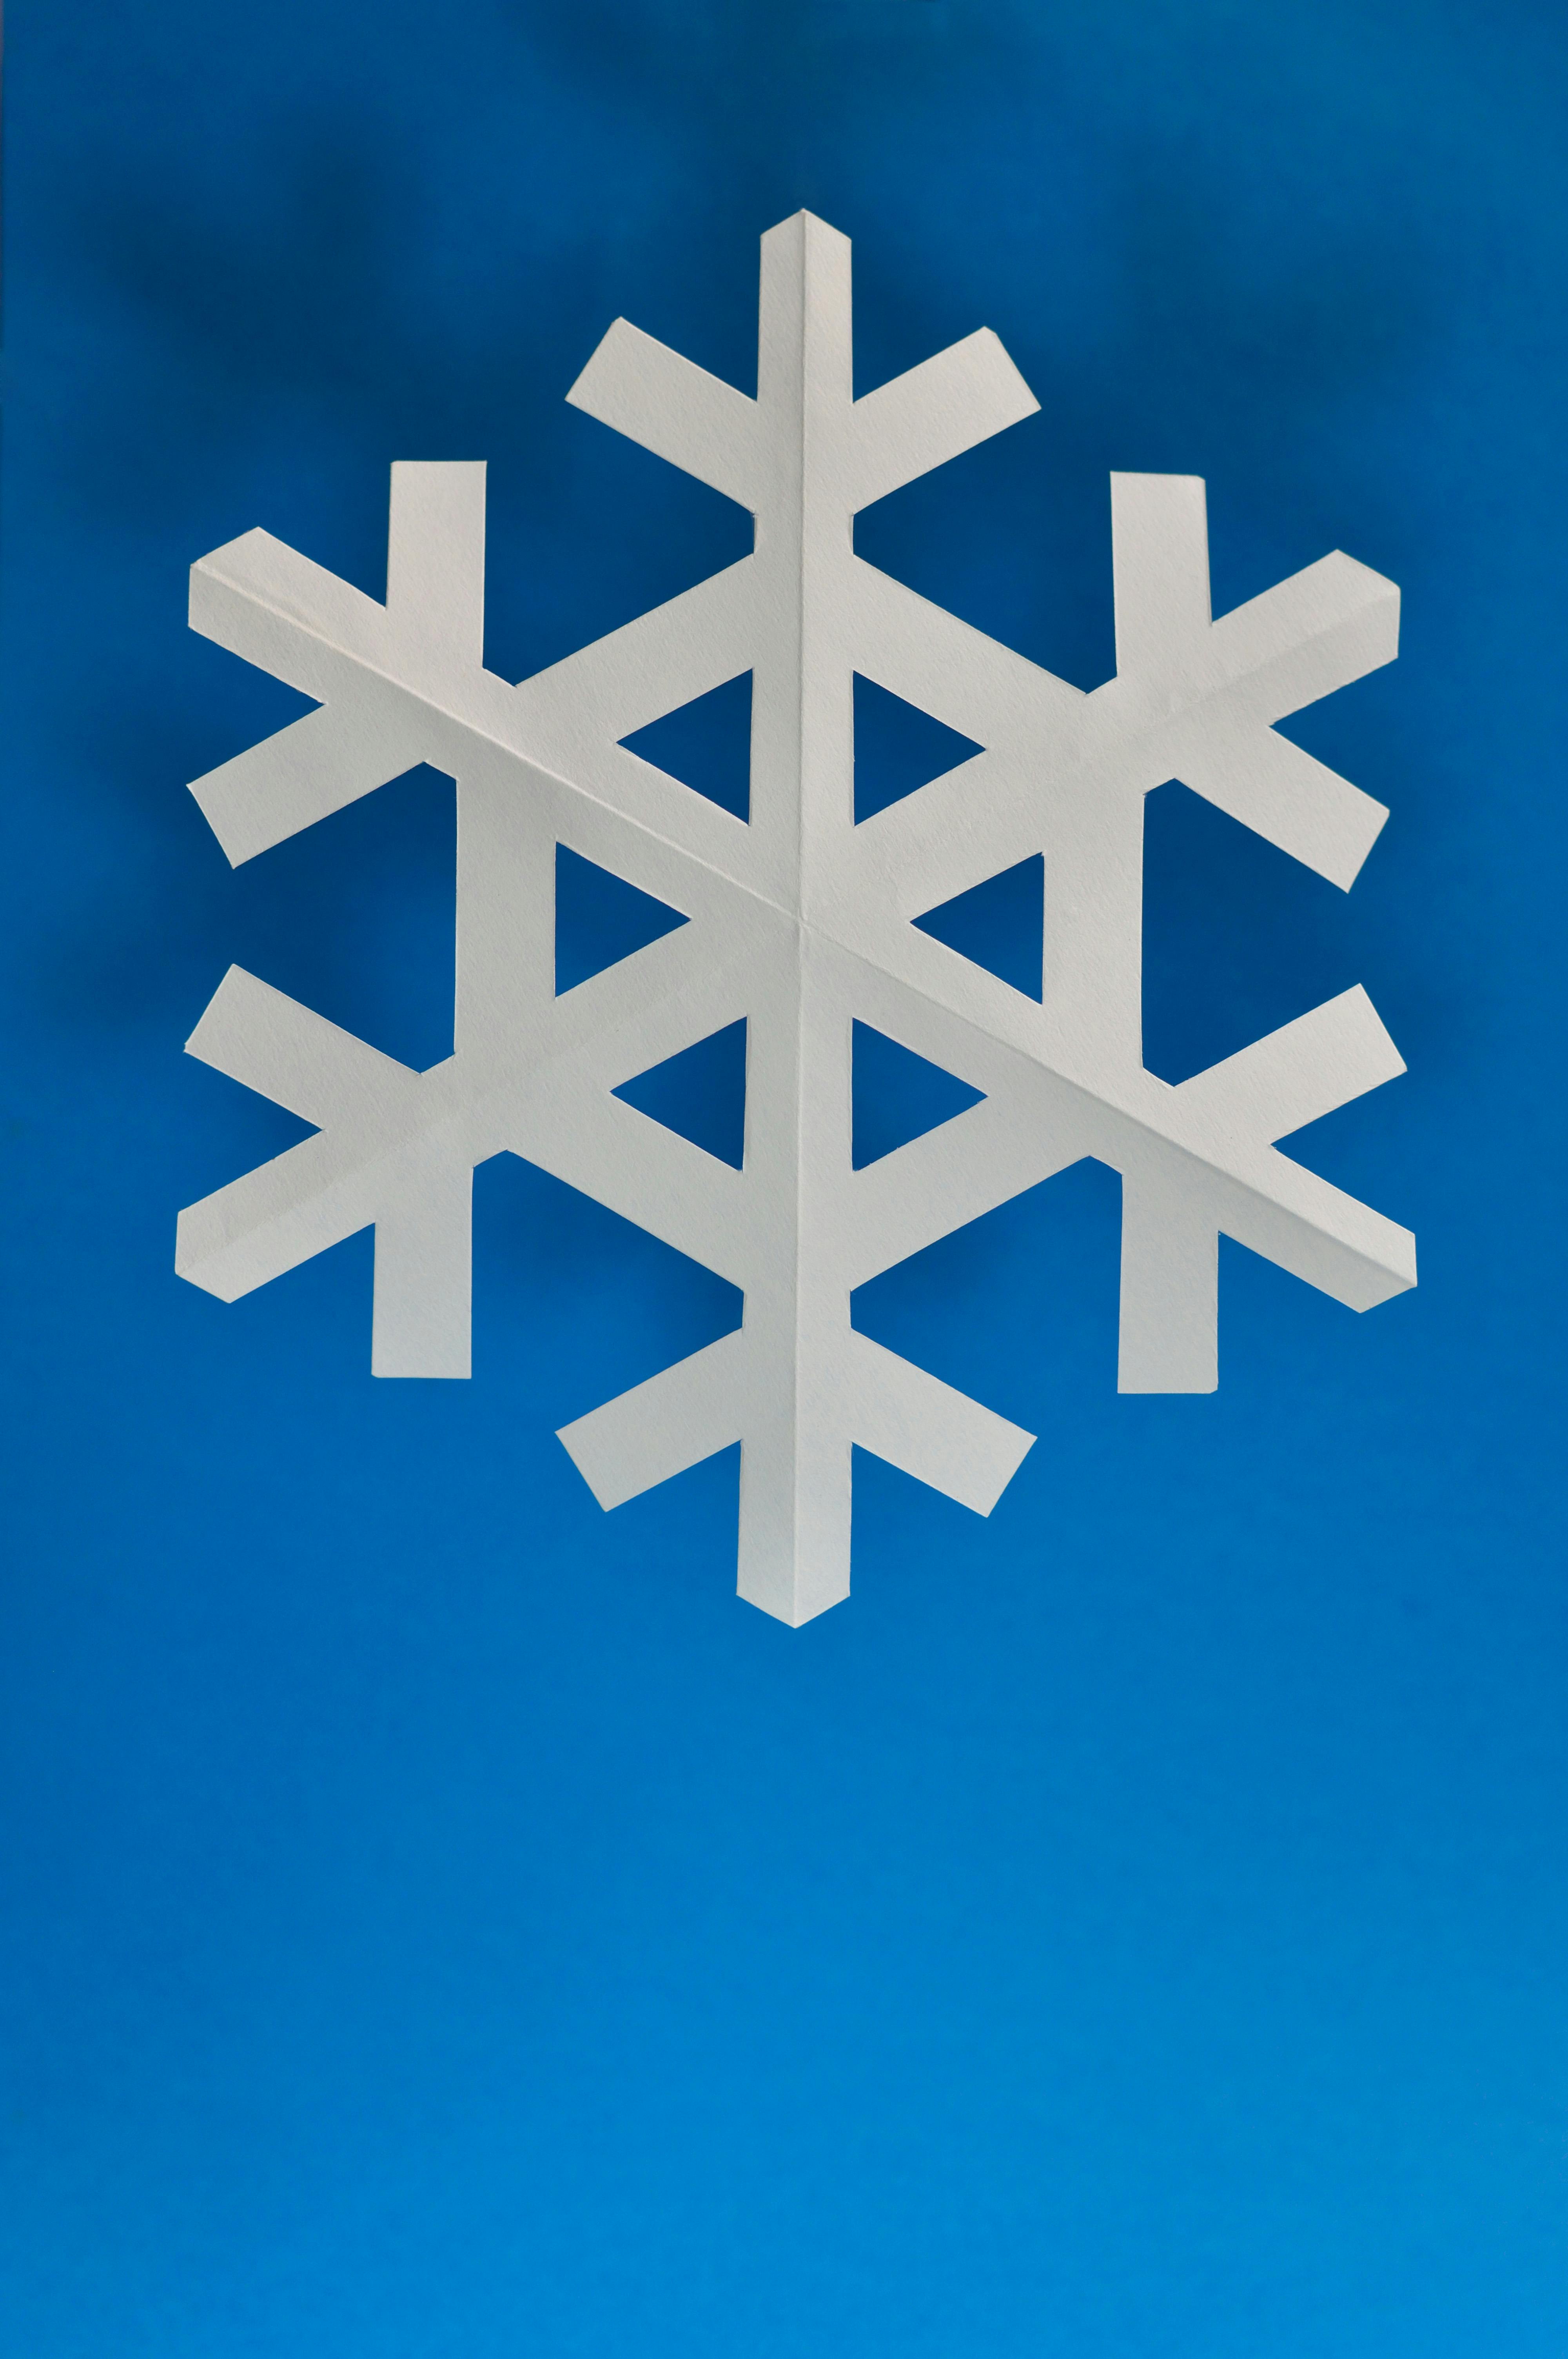 69+] Snowflake Backgrounds - WallpaperSafari